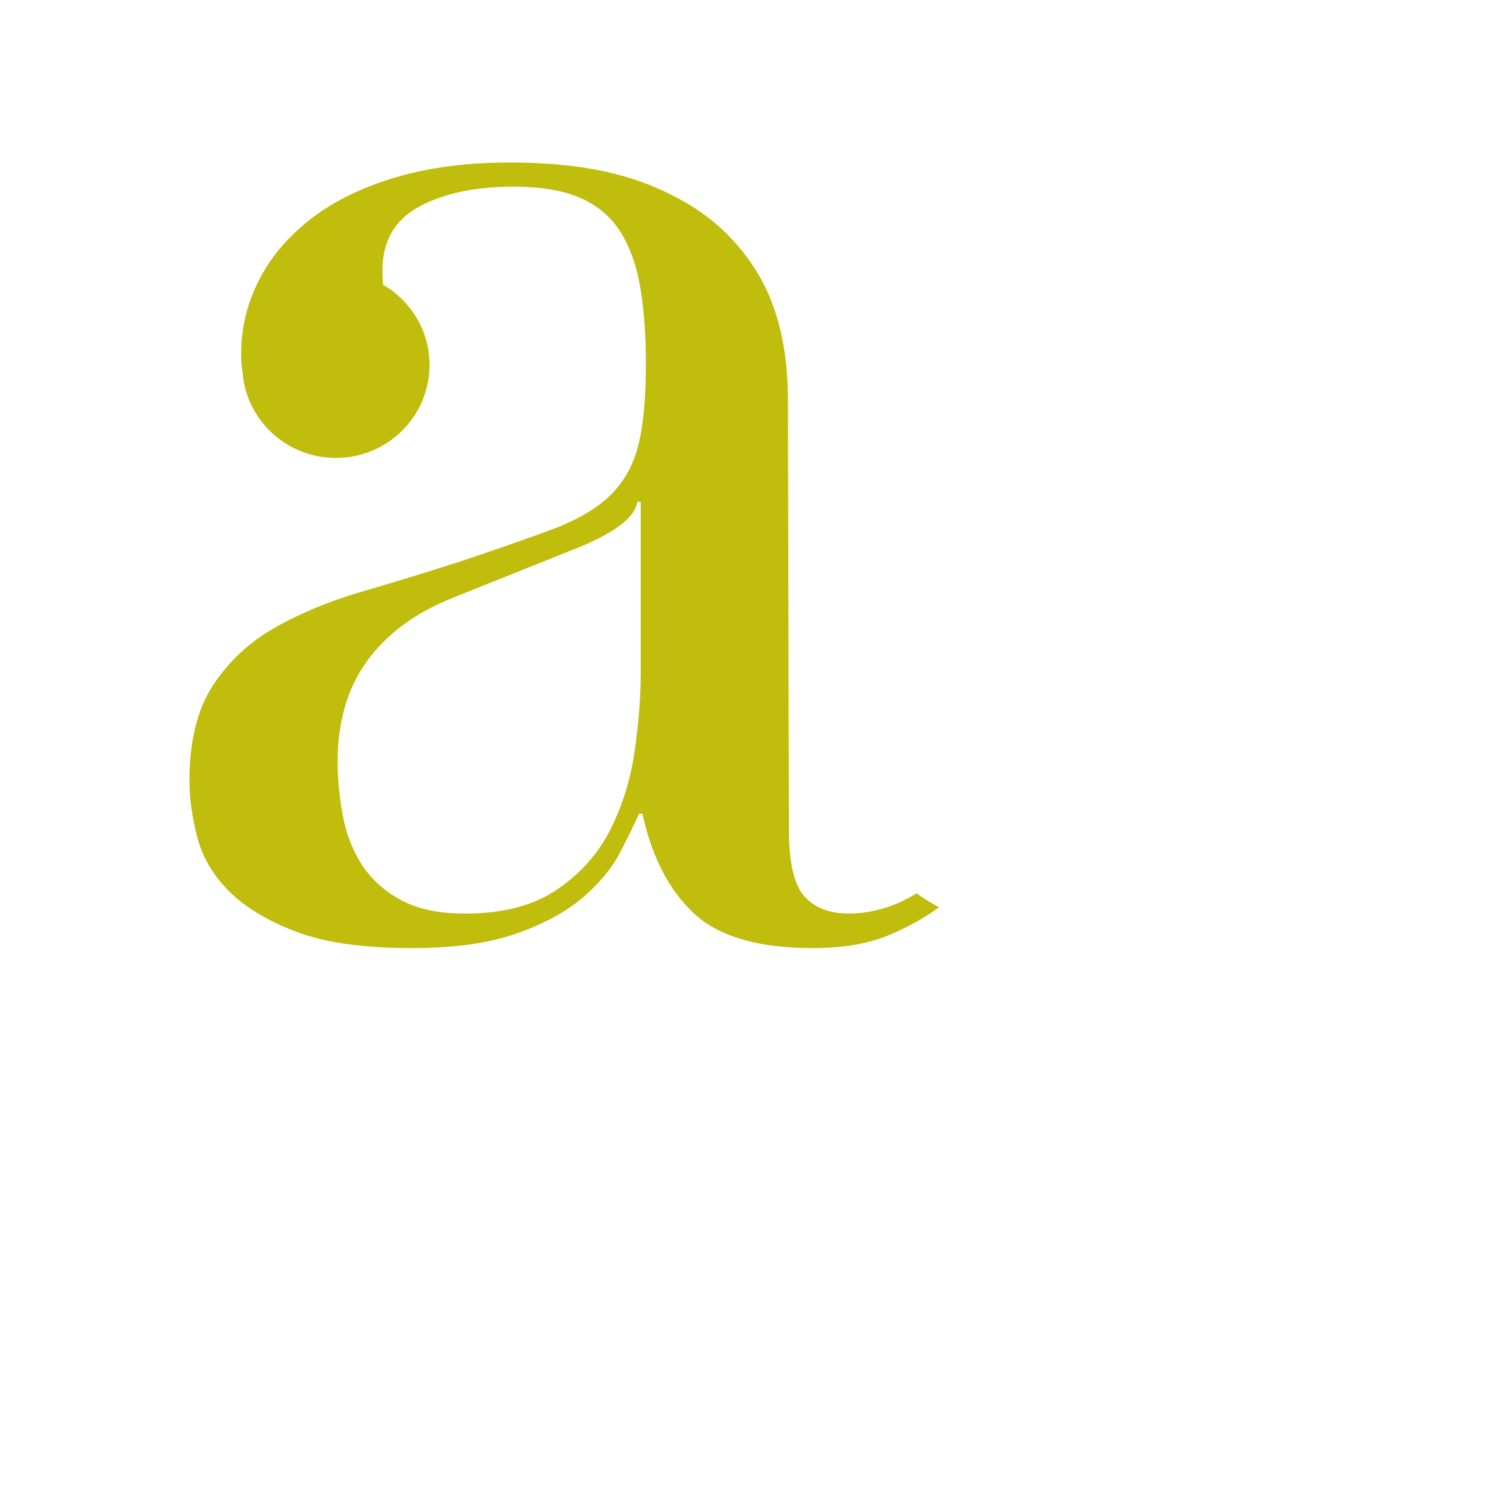 Alex Smith